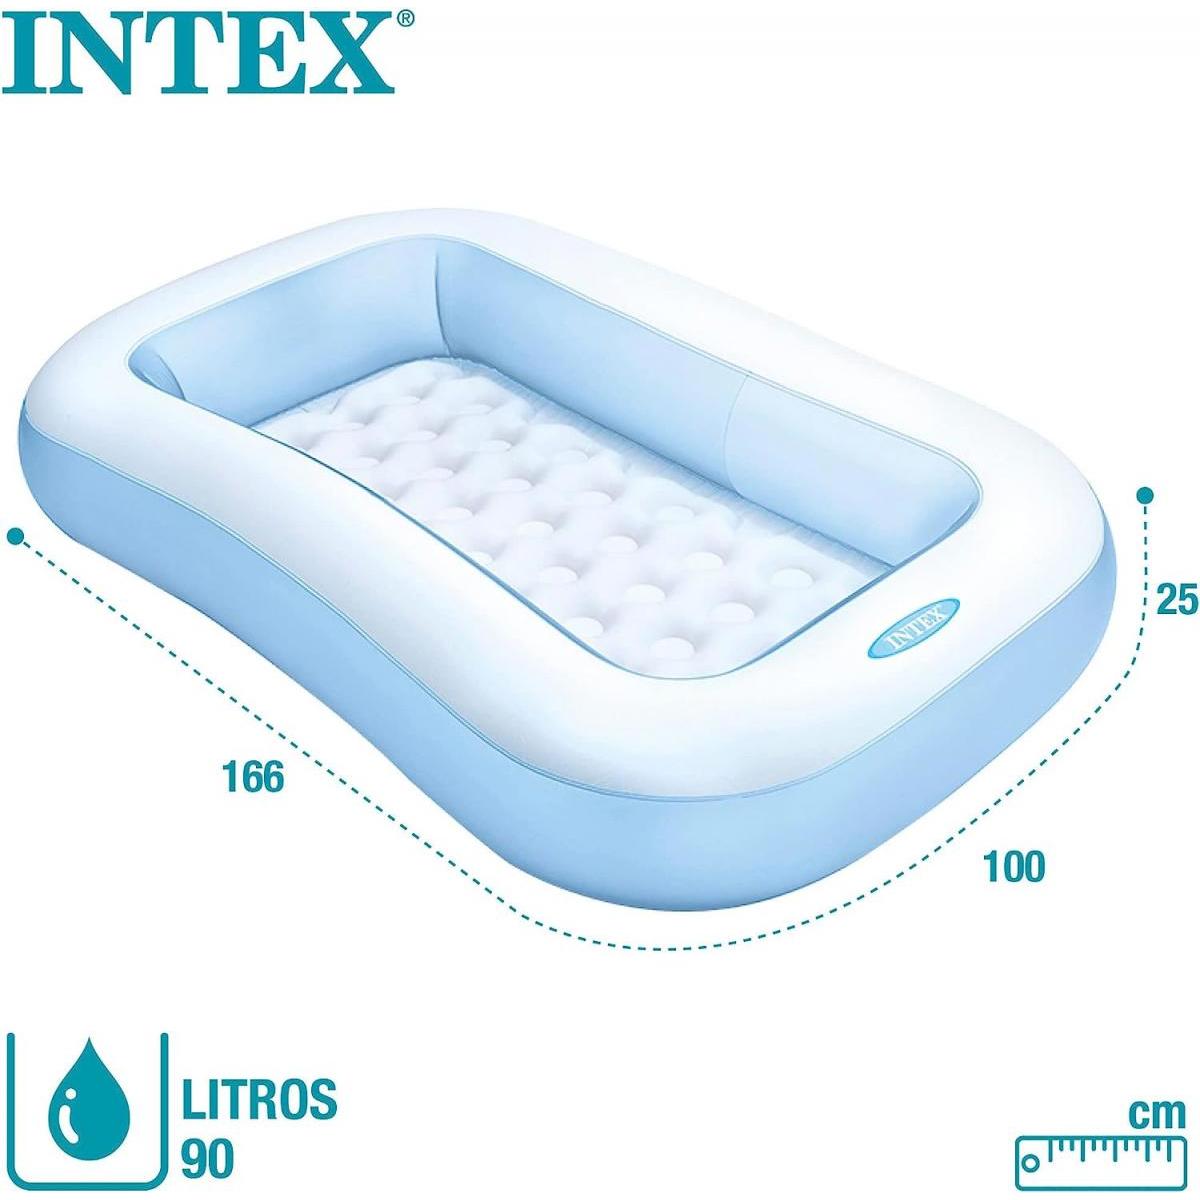  INTEX(インテックス) レクタングラーベビープール 166×100×25cm 水色 57403NP　乳幼児用 ビニールプール 1人用 水遊び コンパクト